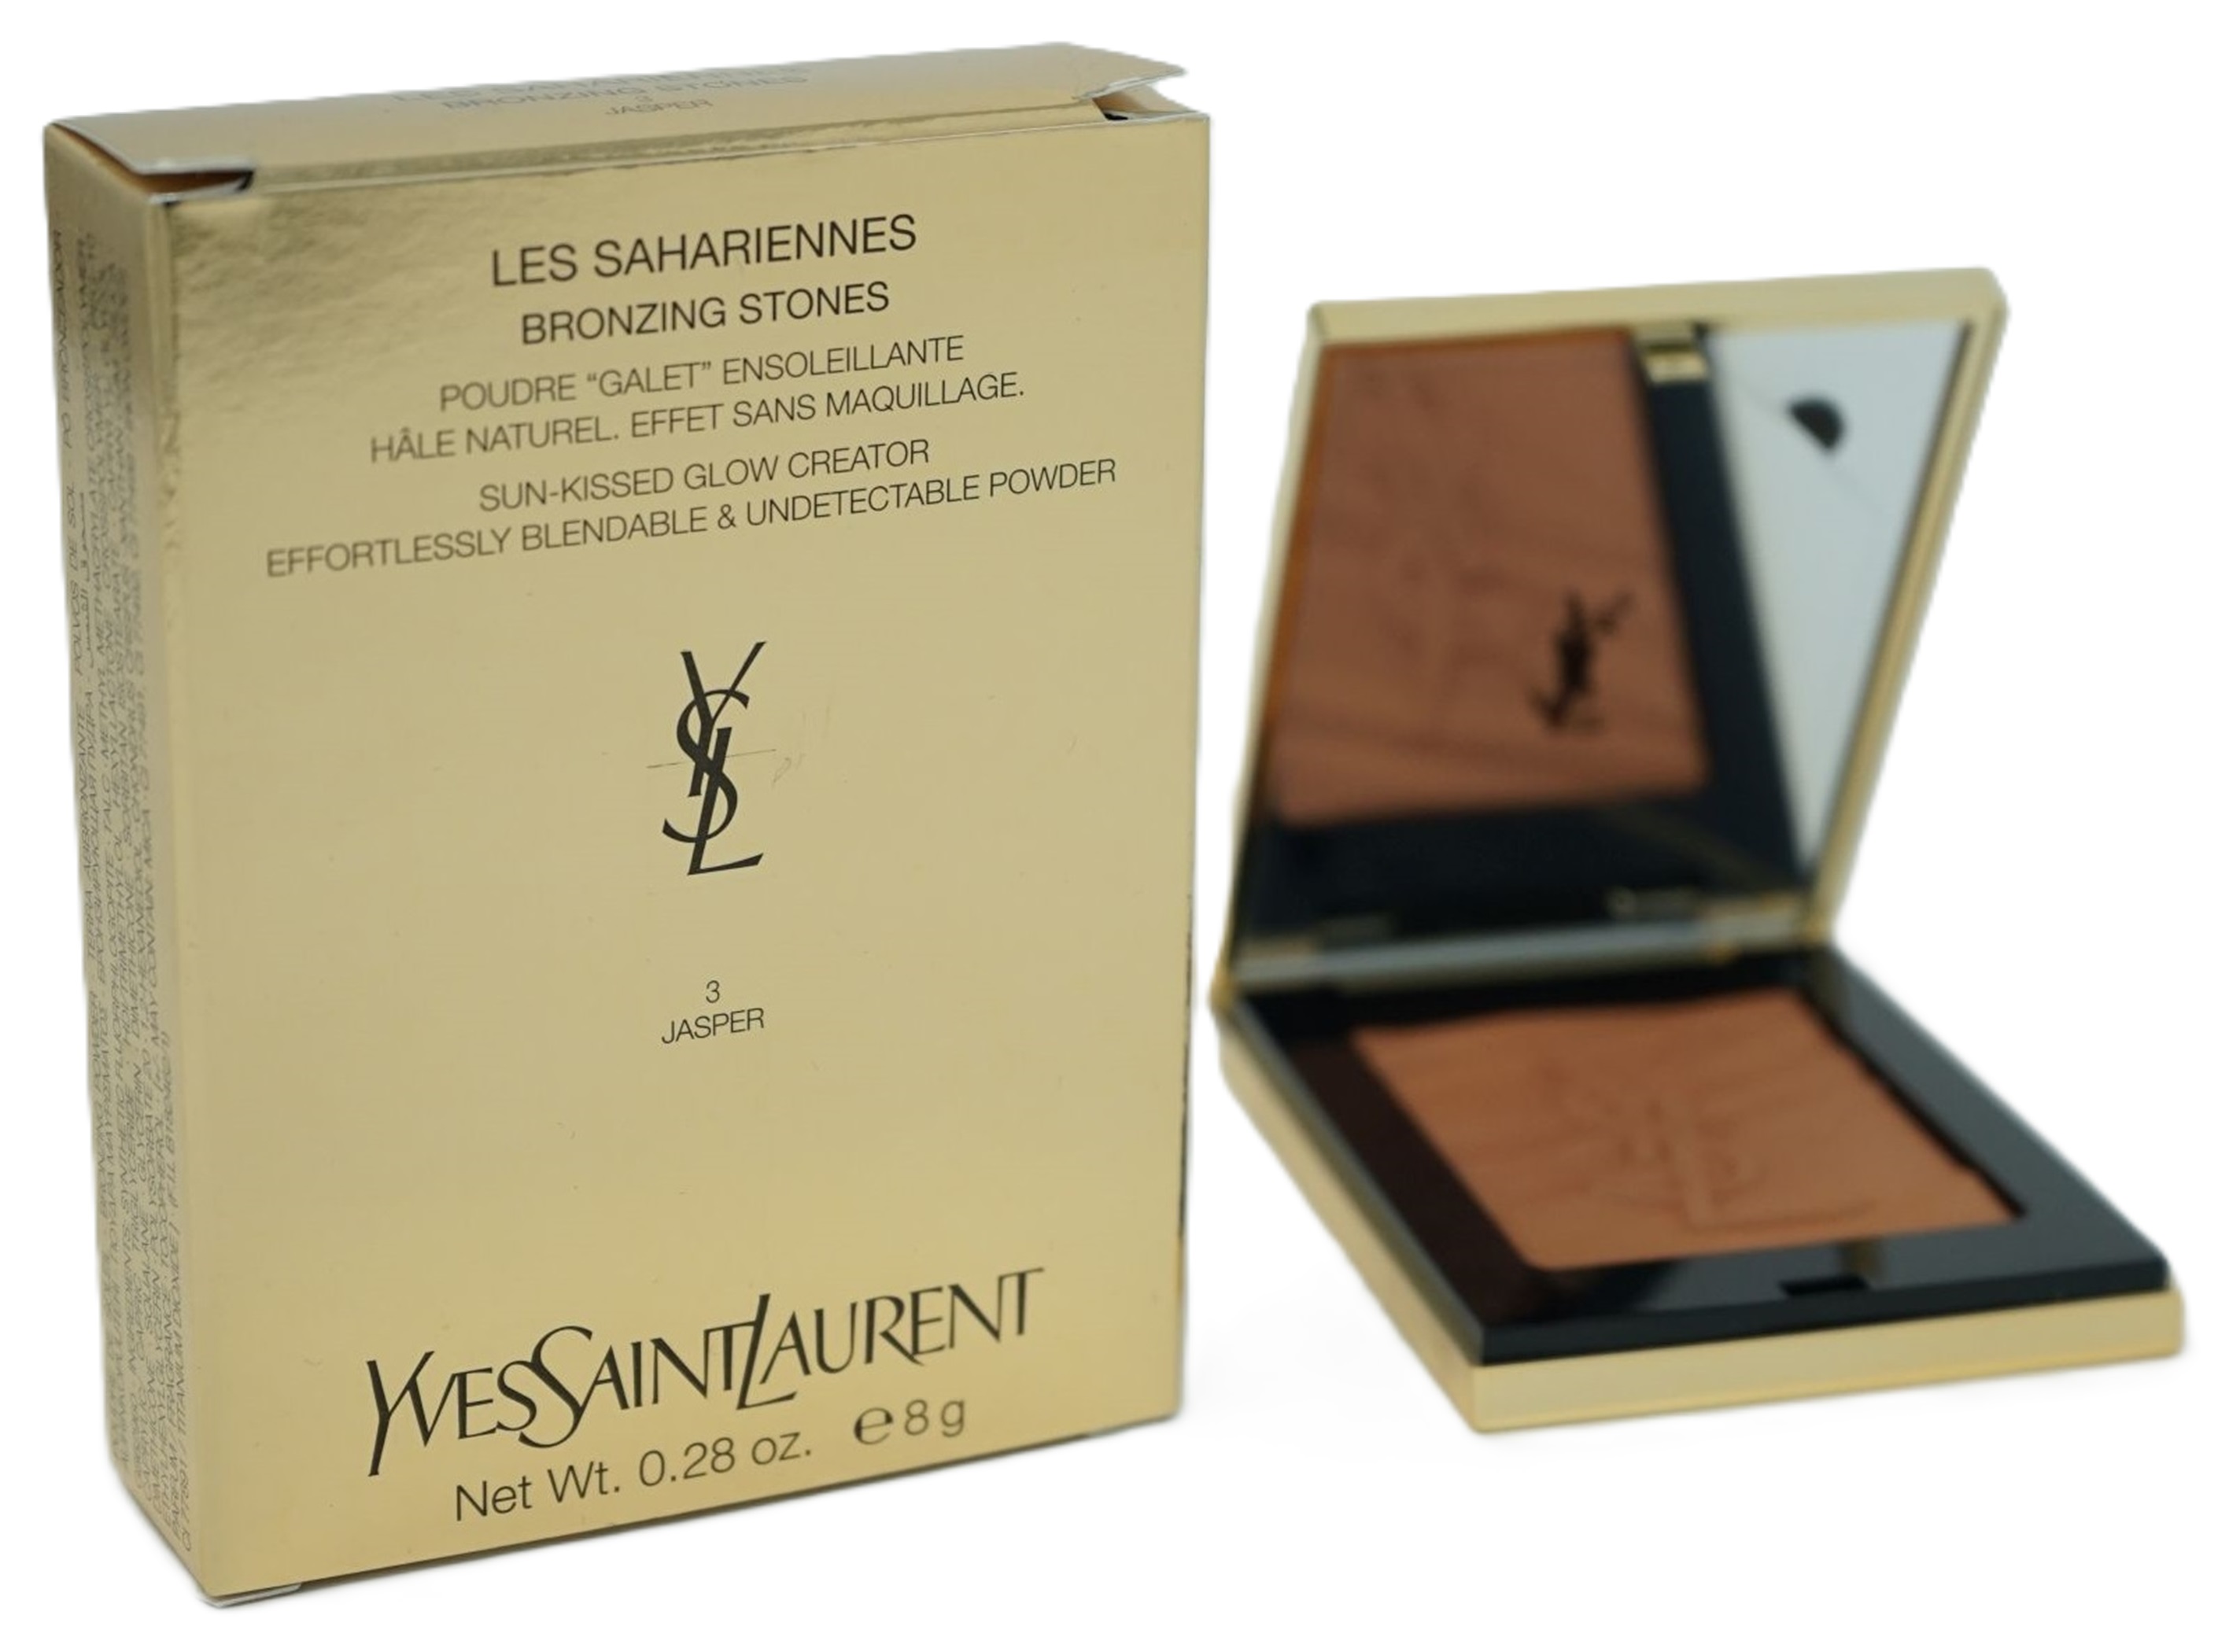 Yves Saint Laurent Les Sahariennes Healthy undetectable-Powder Puder 3 Jasper